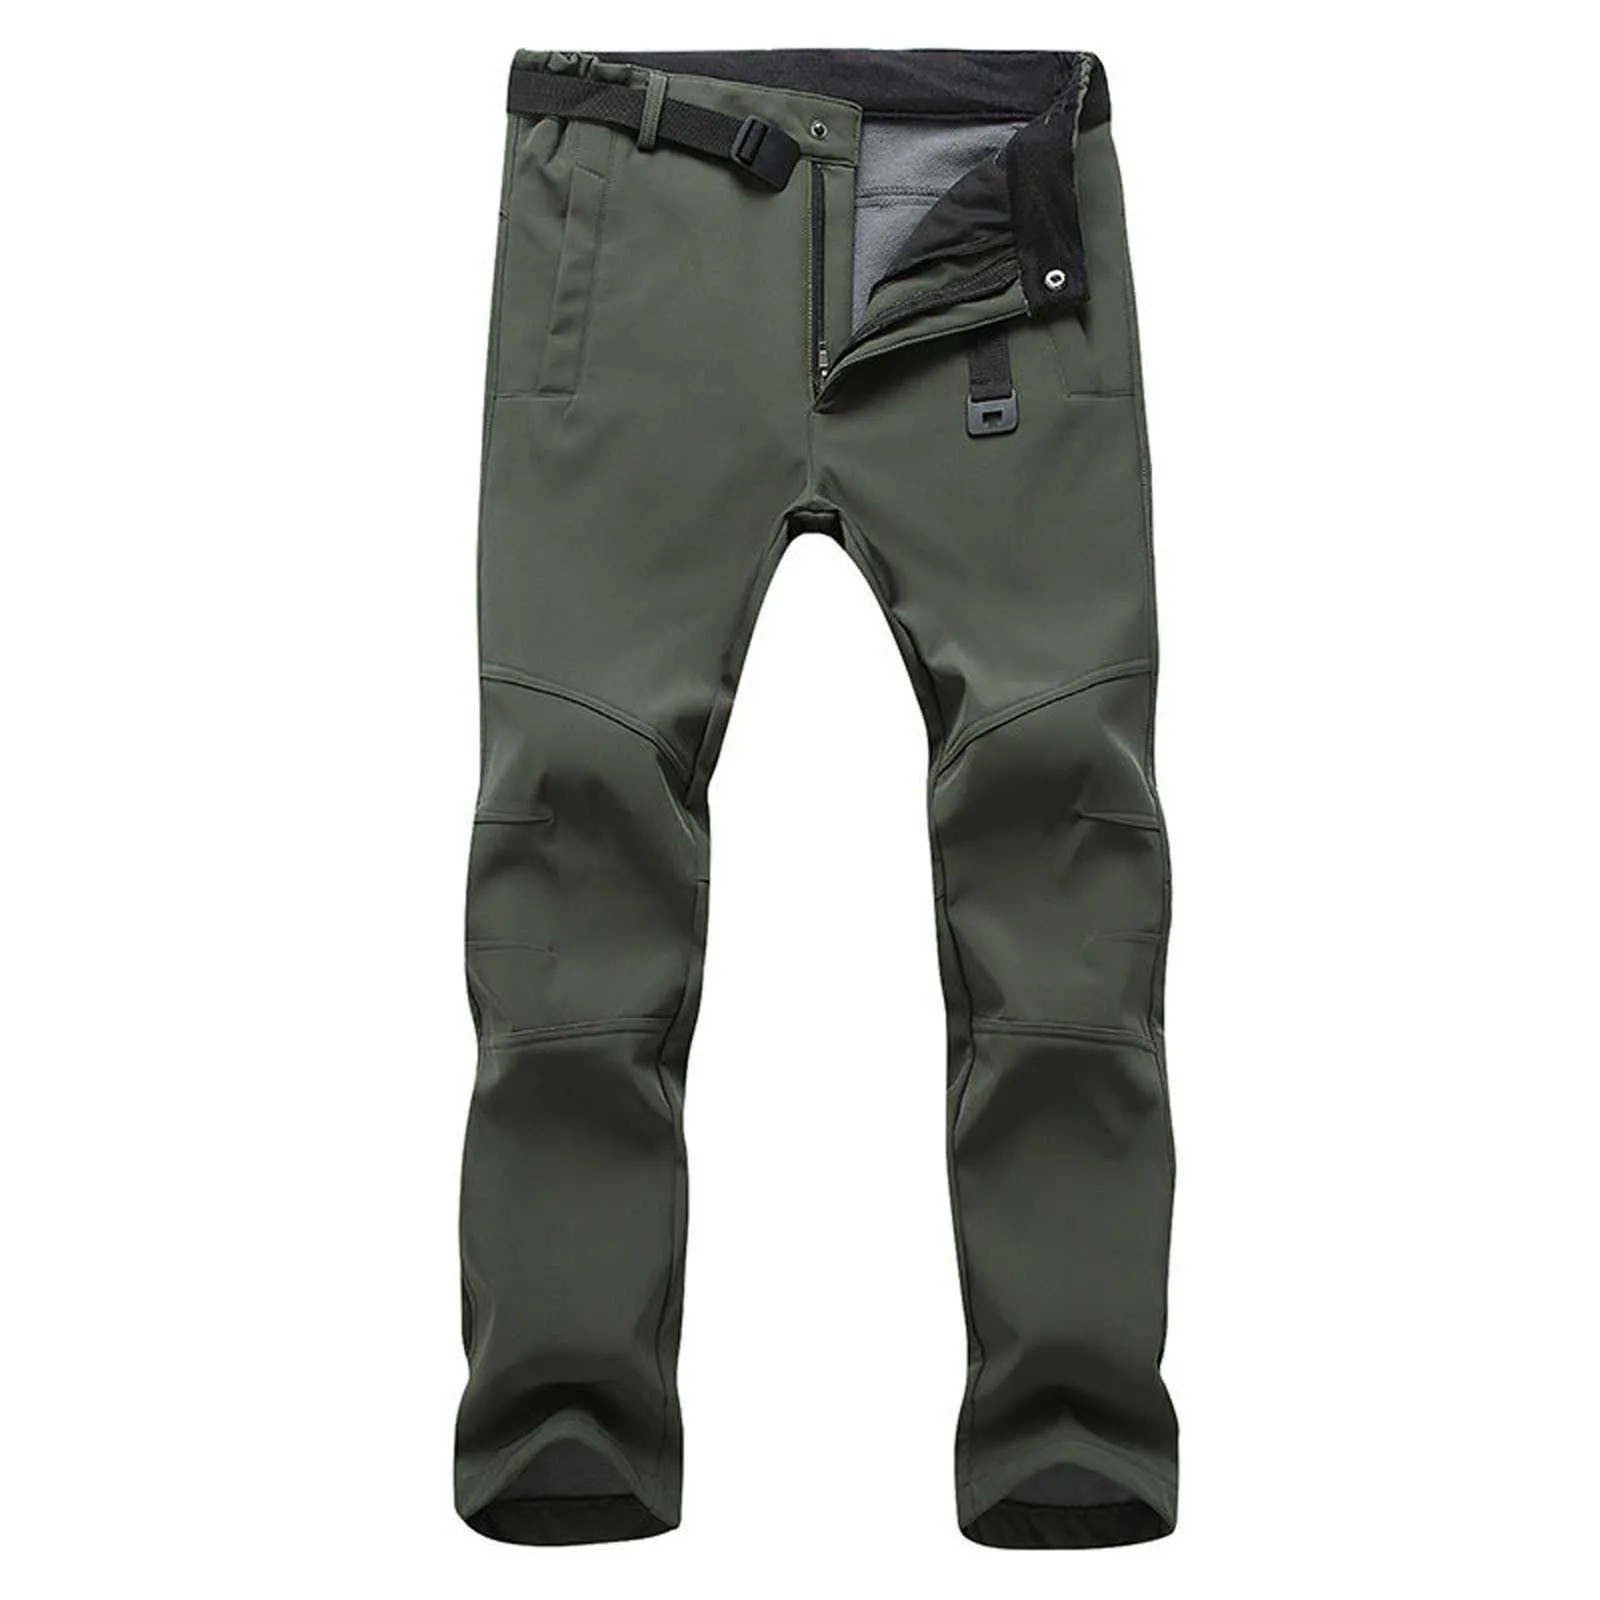 Homens ao ar livre militar calças táticas casuais cintura alta caminhadas calças grossas outono inverno térmico fleece suor calças absorventes # 35 x0615